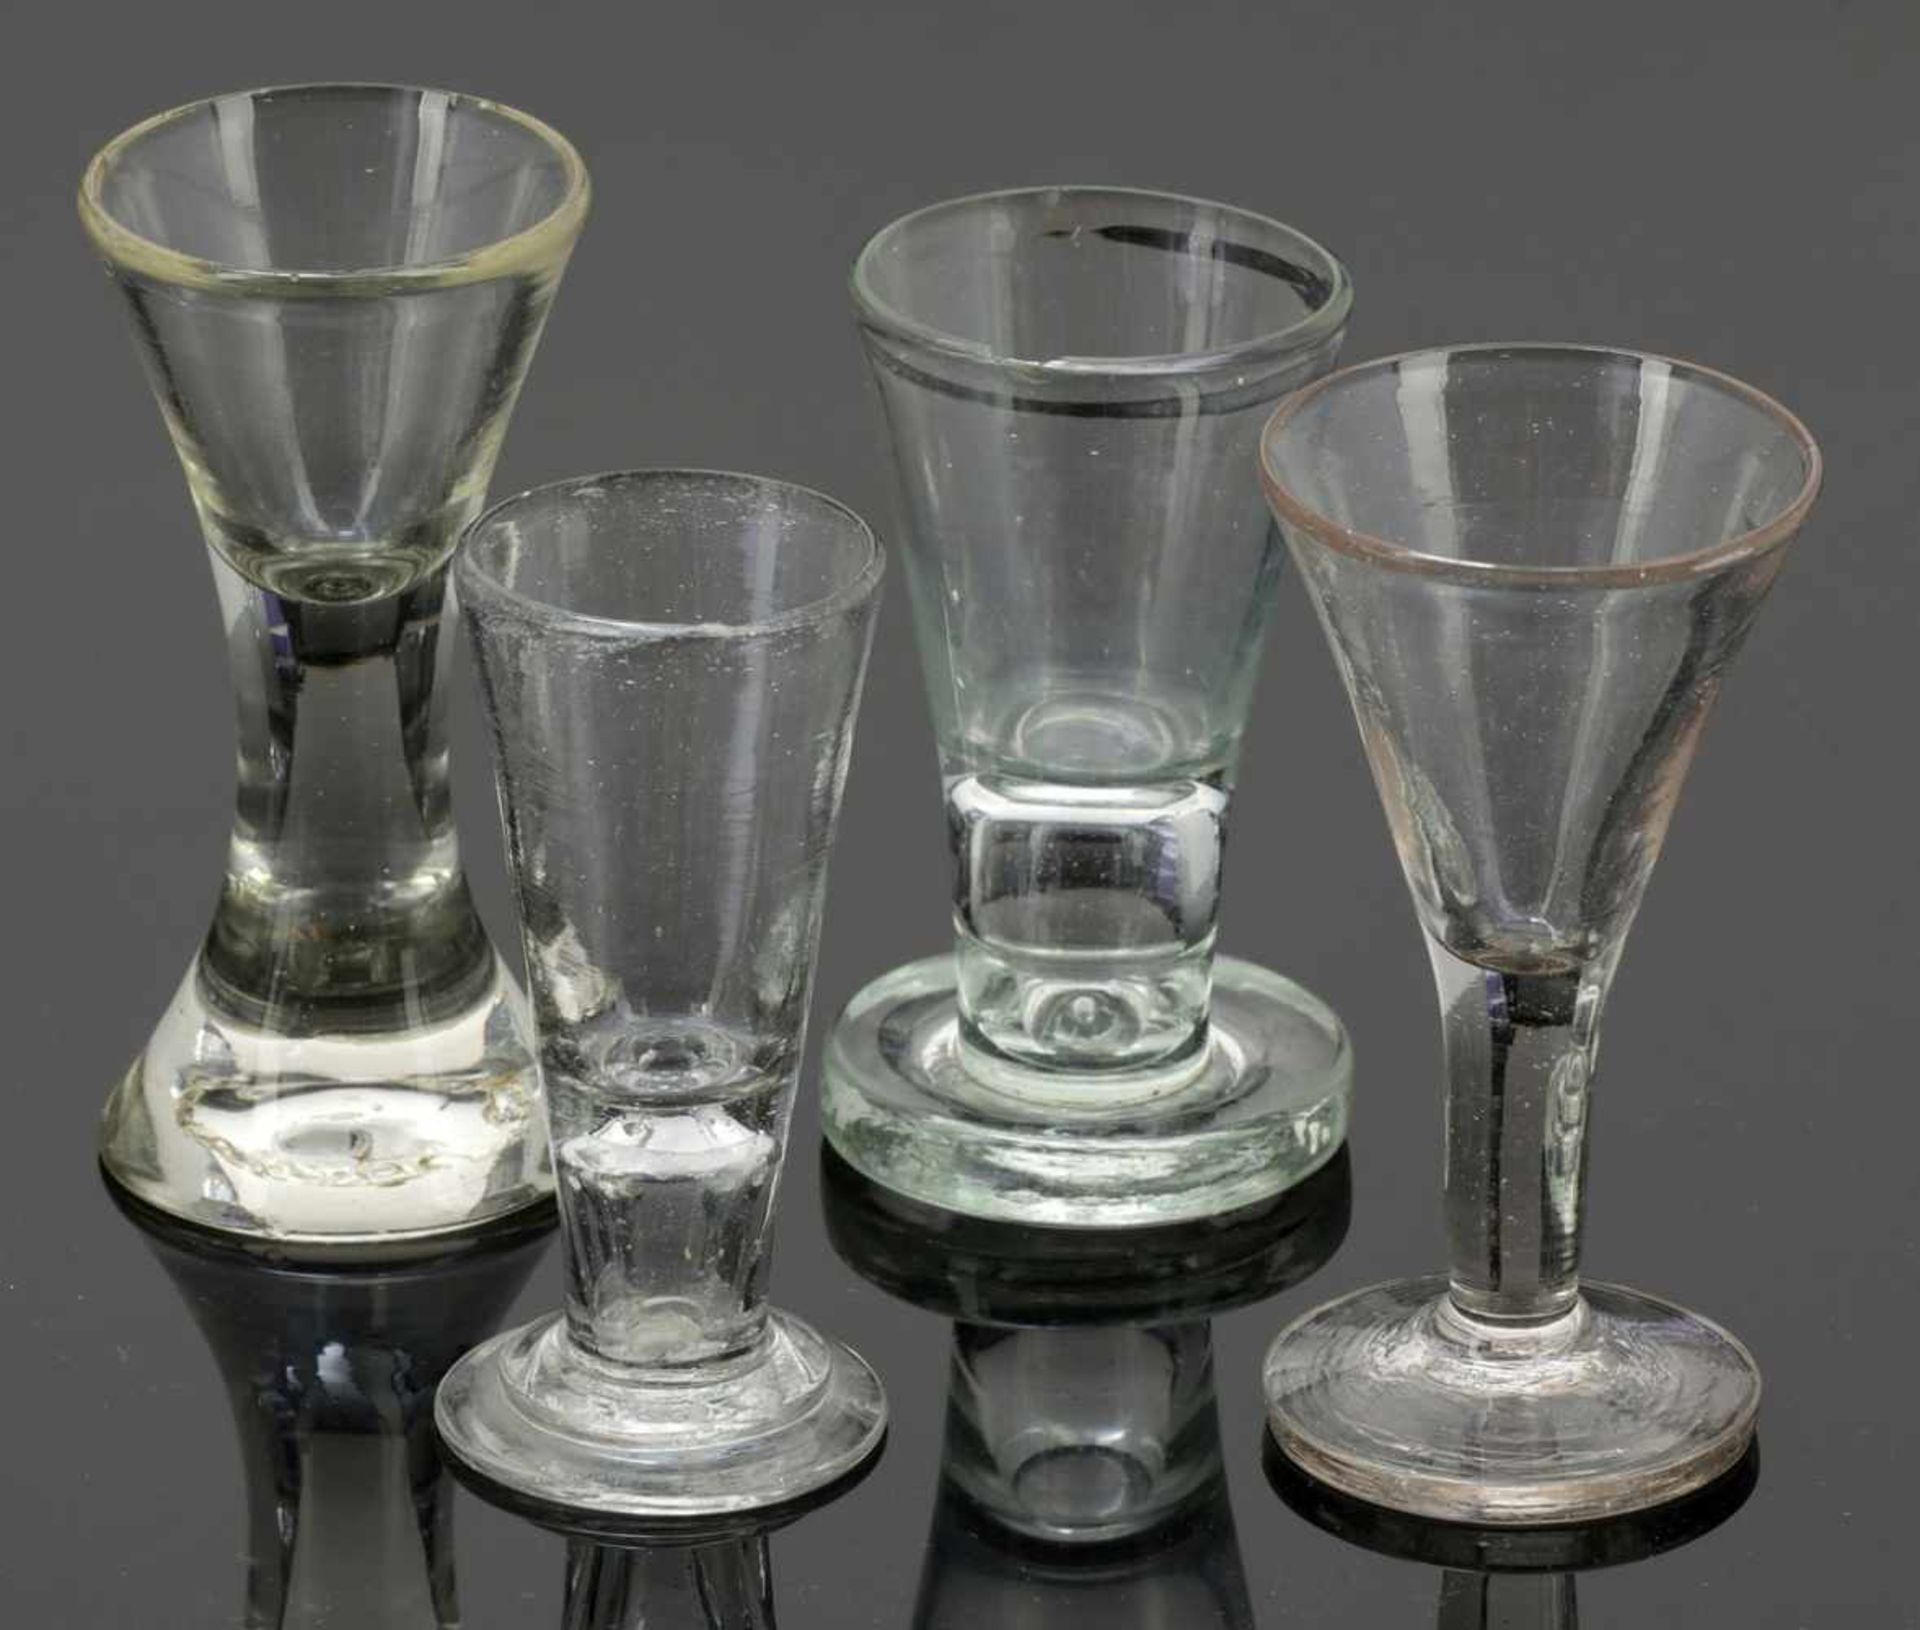 4 SchnapsgläserNorddeutsch, Ende 18. Jh. / 1. Hälfte 19. Jh. Farbloses Glas. 3 Gläser mit Abriss, - Image 3 of 3